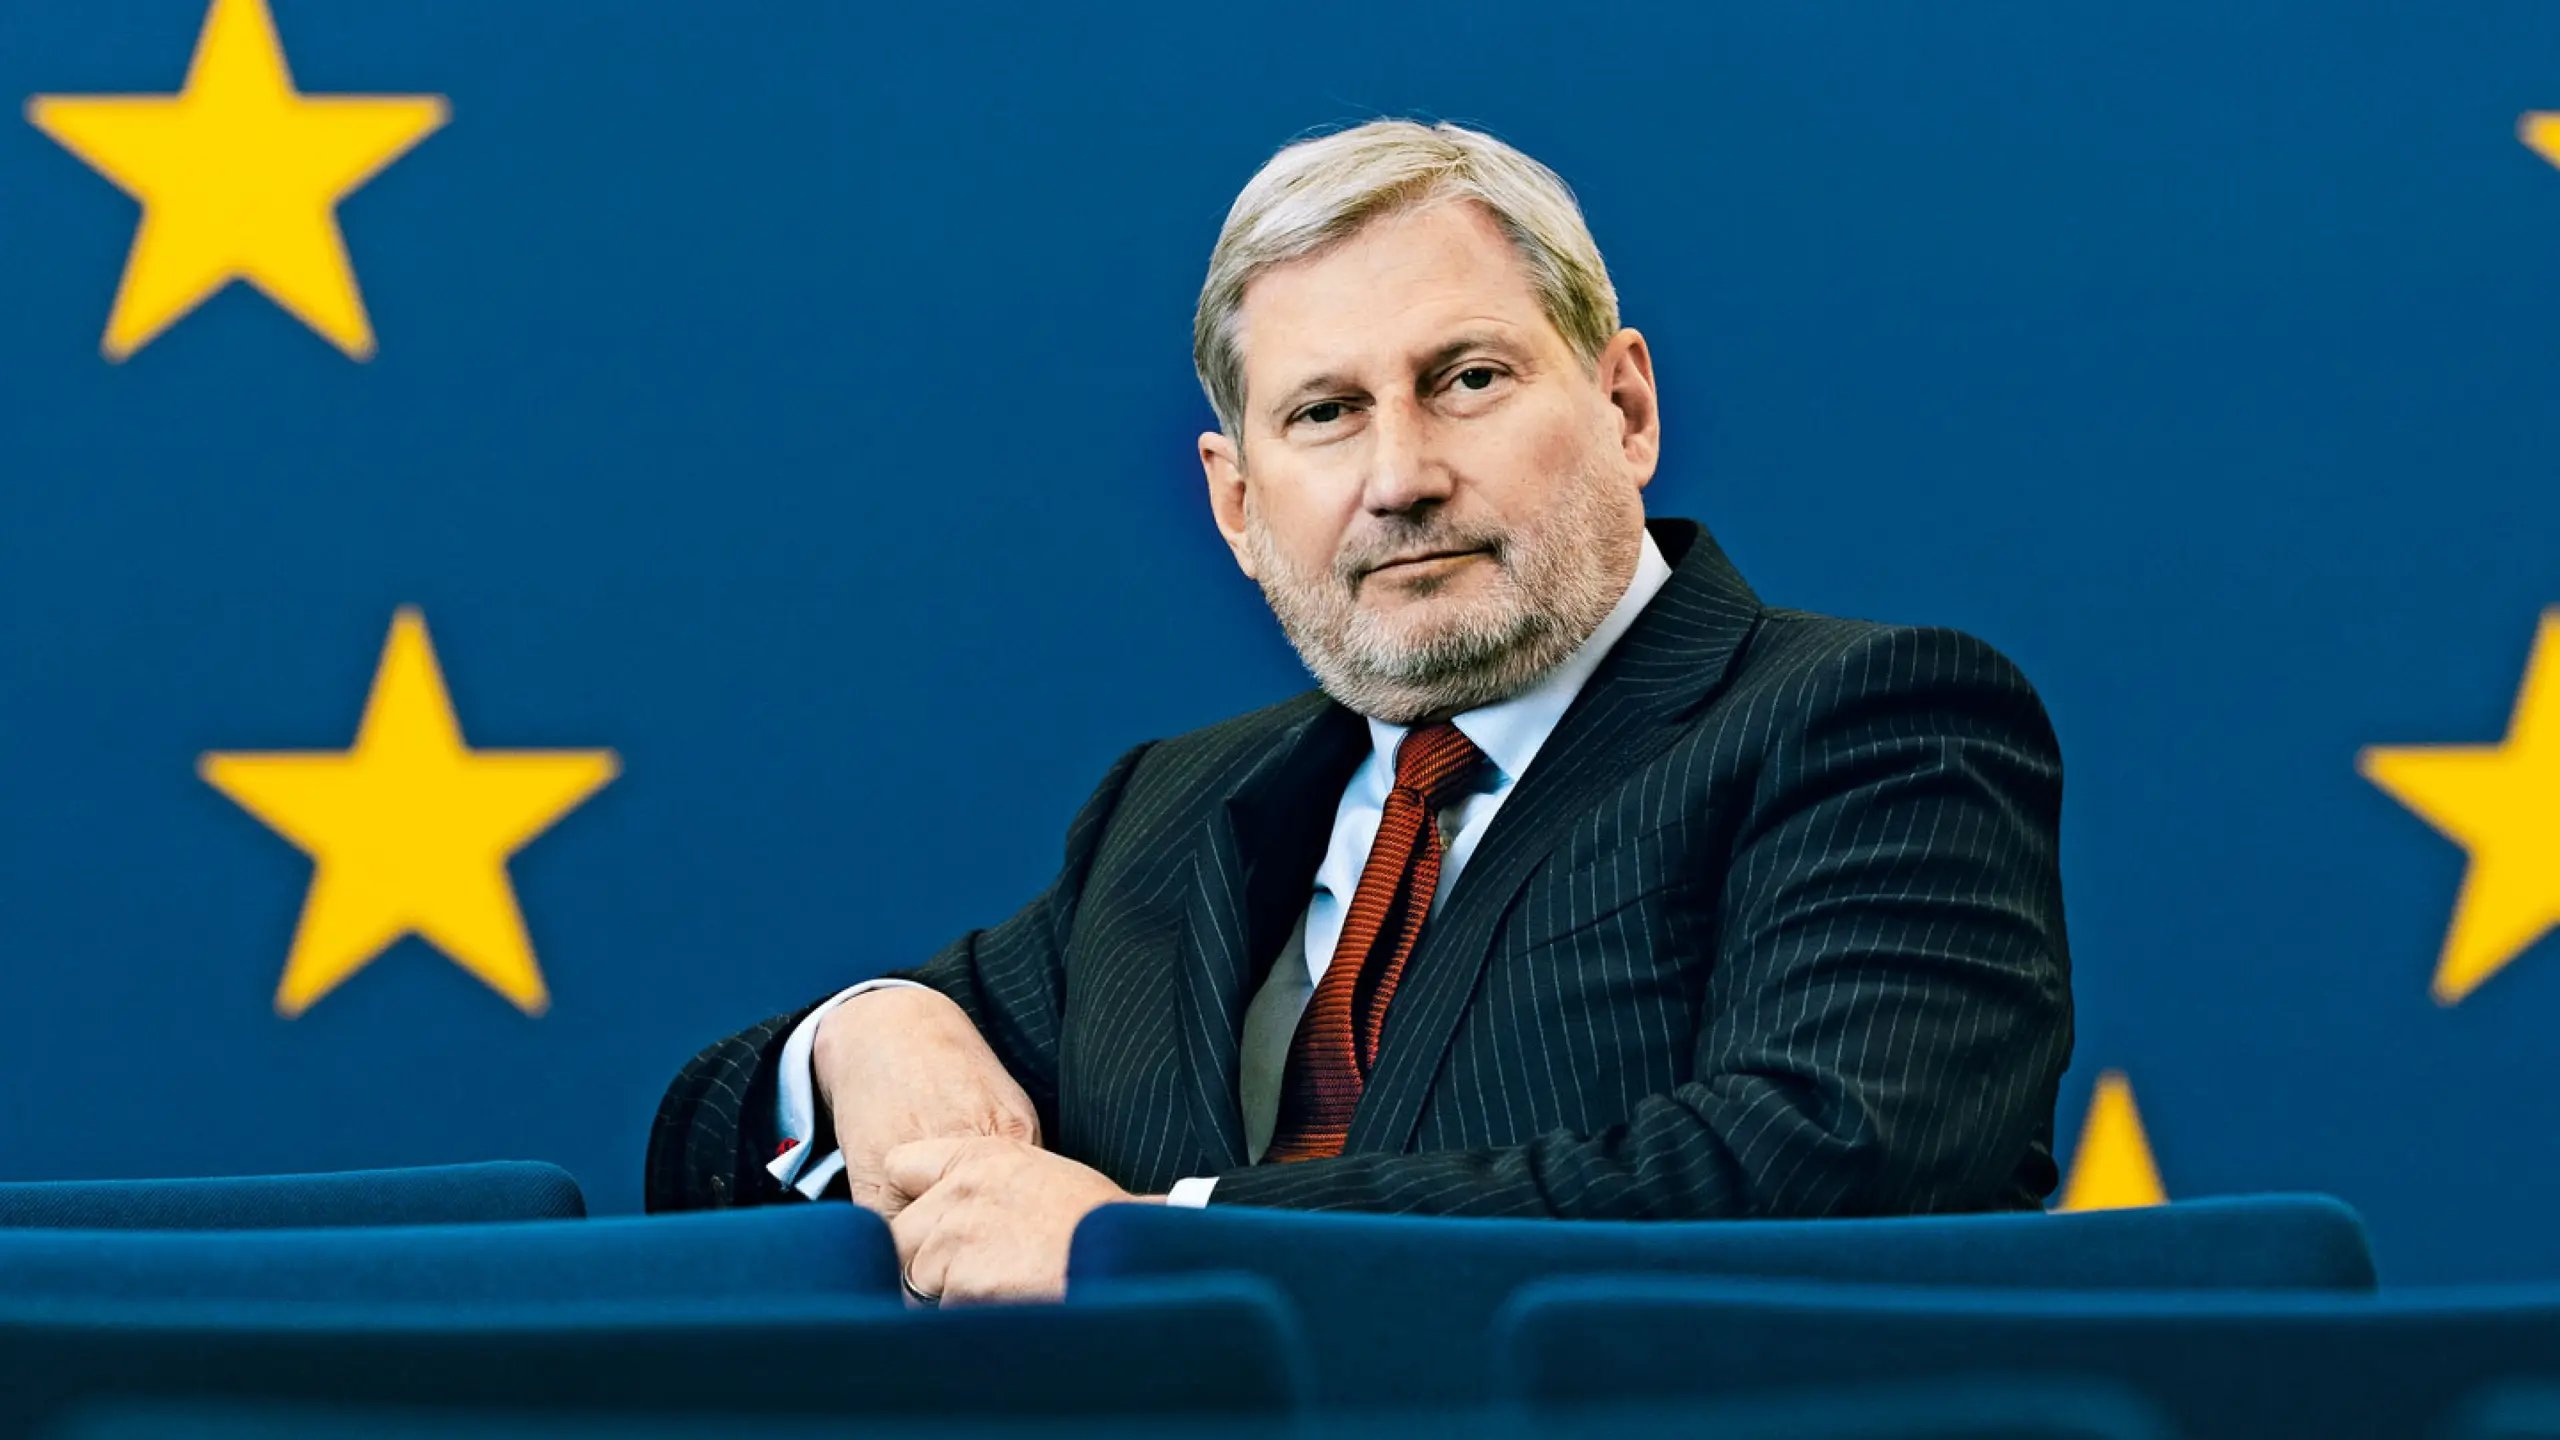 EU-Budgetkommissar Hahn: "Wir waren alle Schlafwandler"